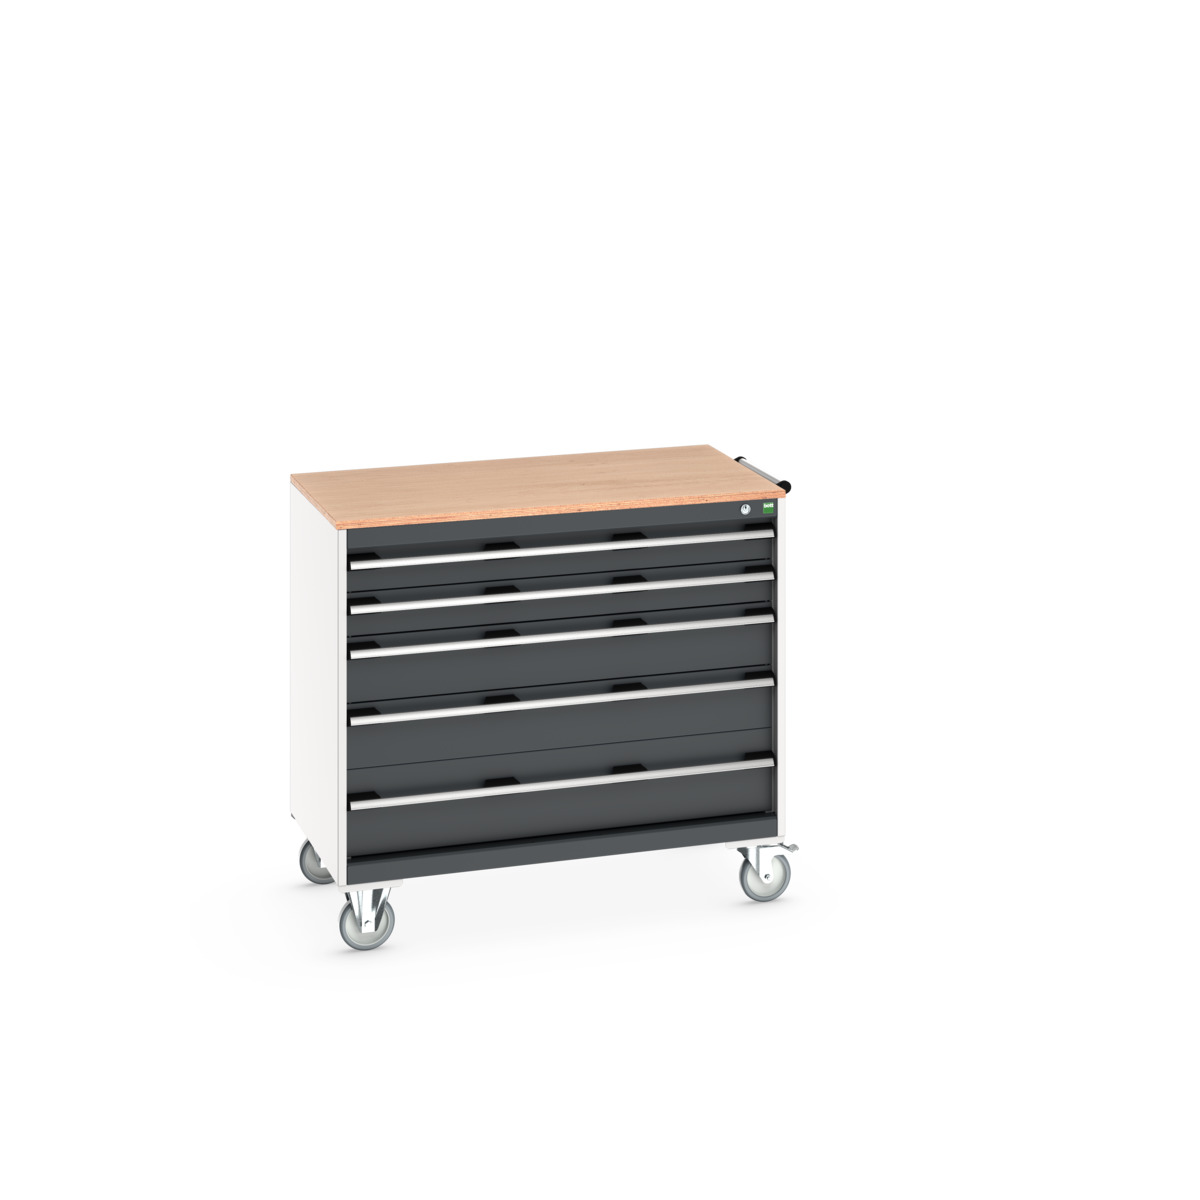 40402165. - cubio mobile cabinet